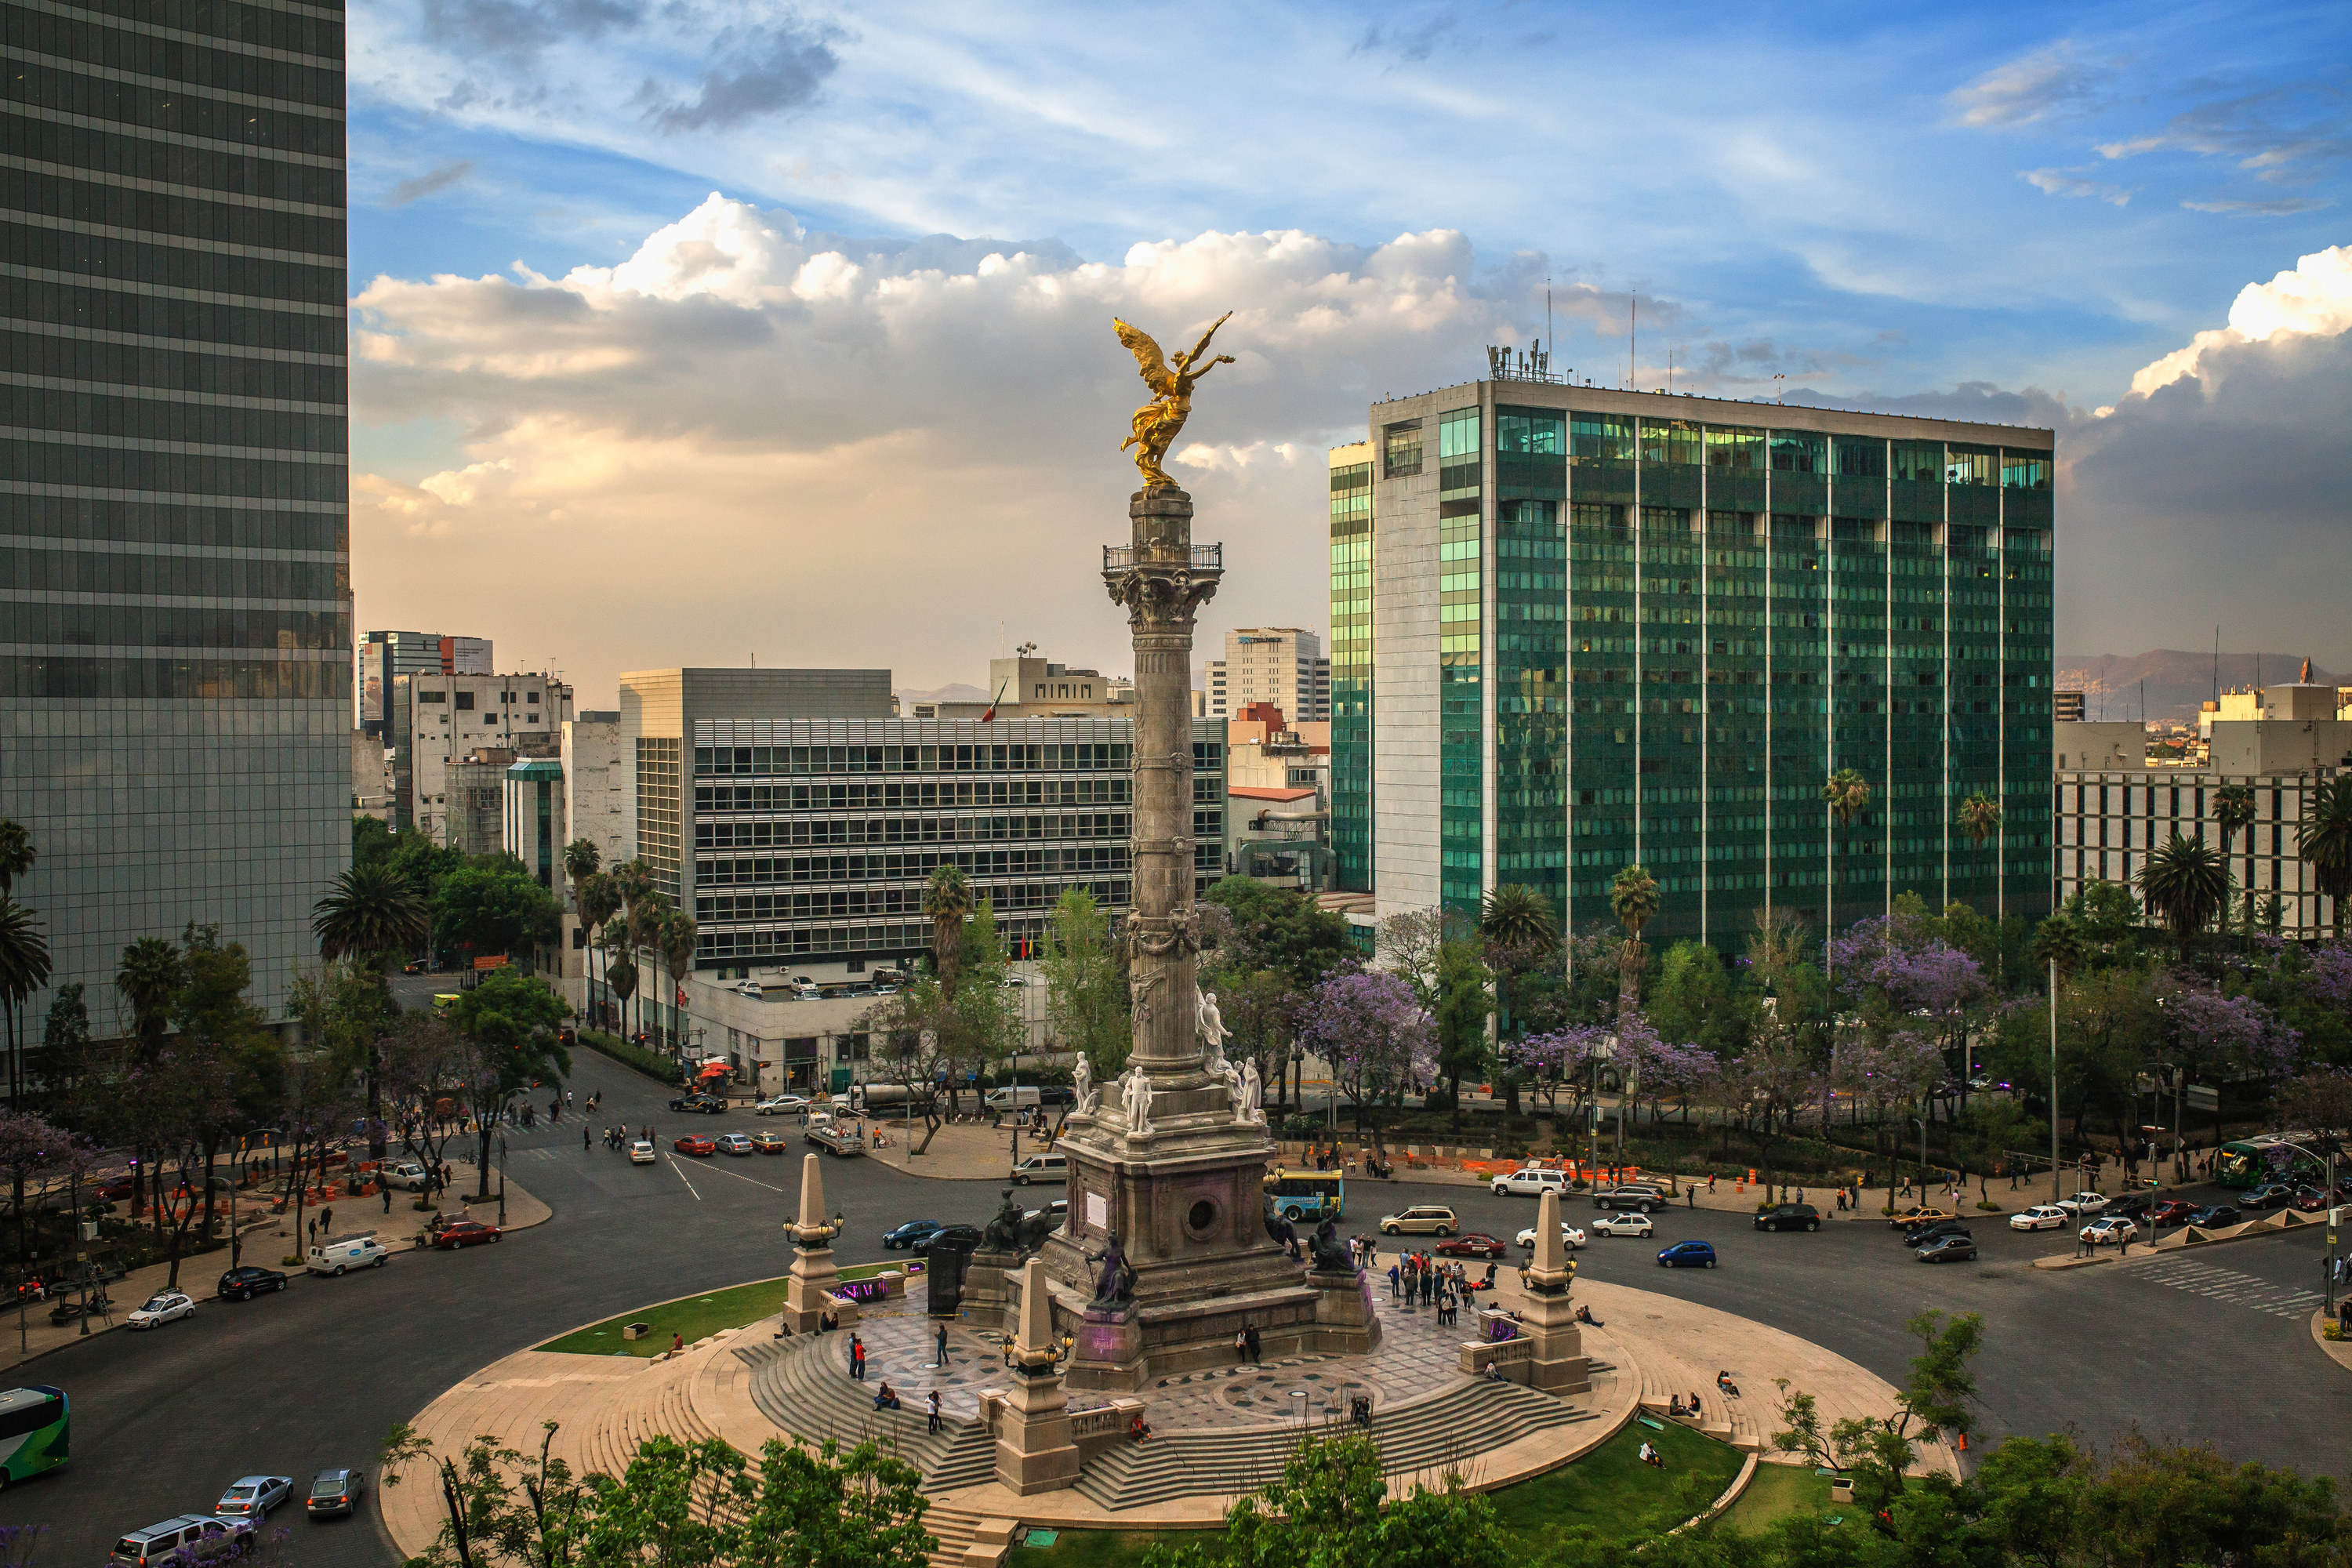 Столица страны мехико. Мексика Мехико Сити. Мехико столица. Исторический центр Мехико Сити. Мехико-Сити достопримечательности.